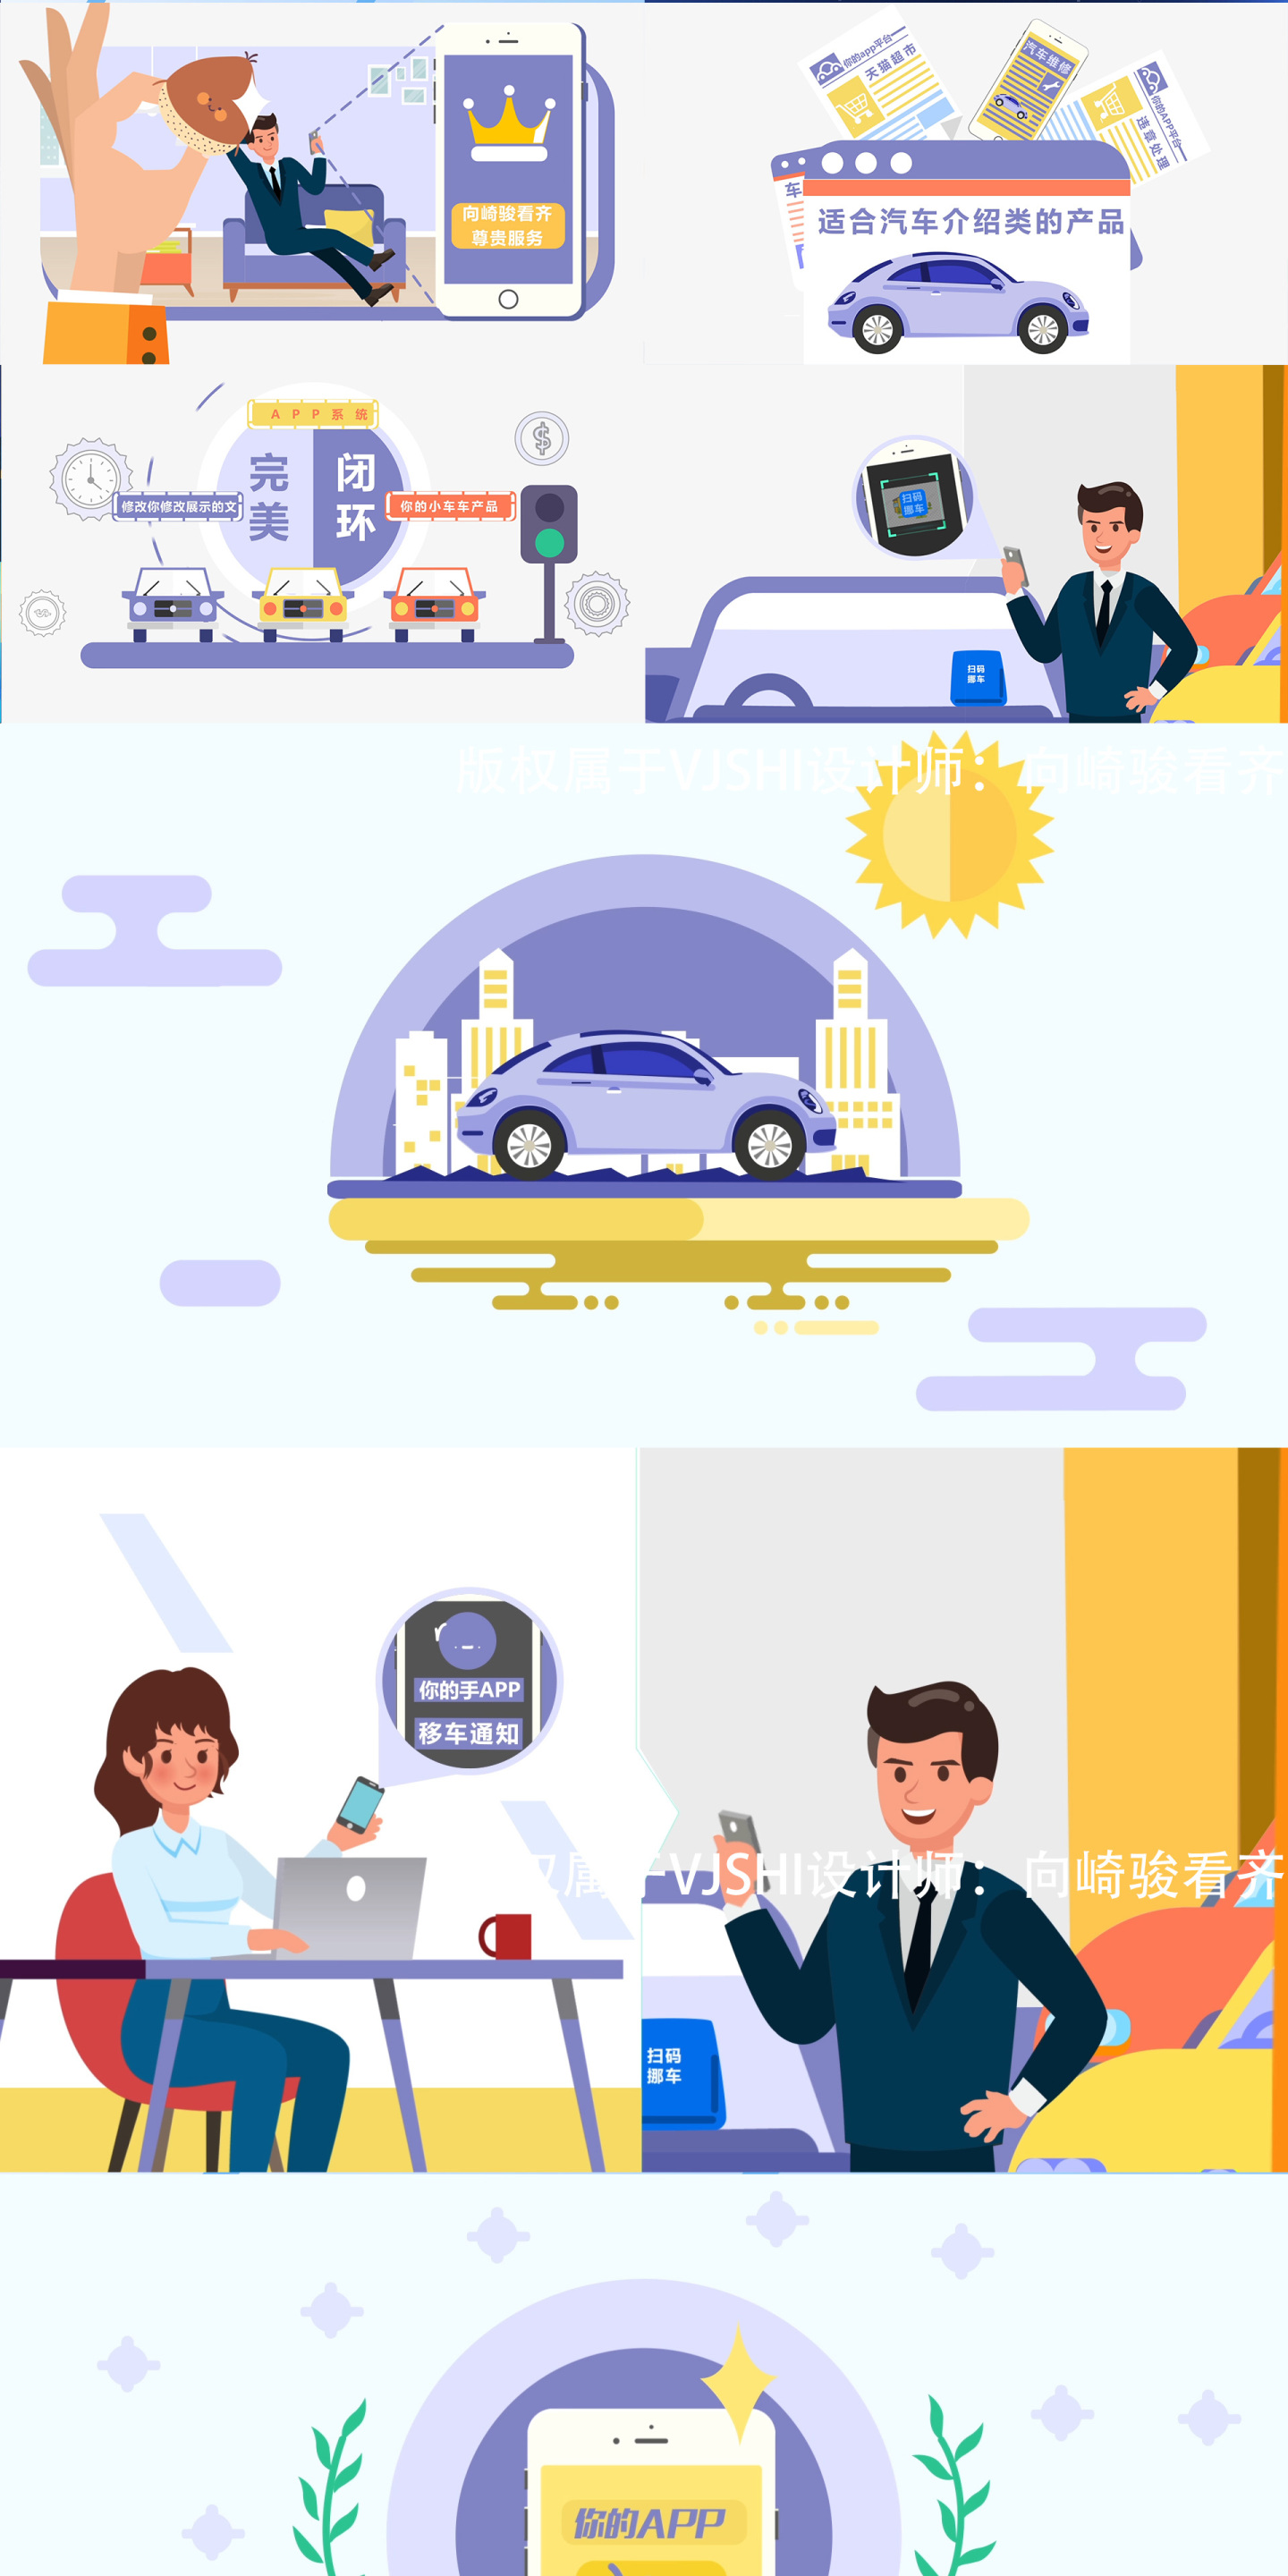 MG手机汽车人物产品文字展示动画